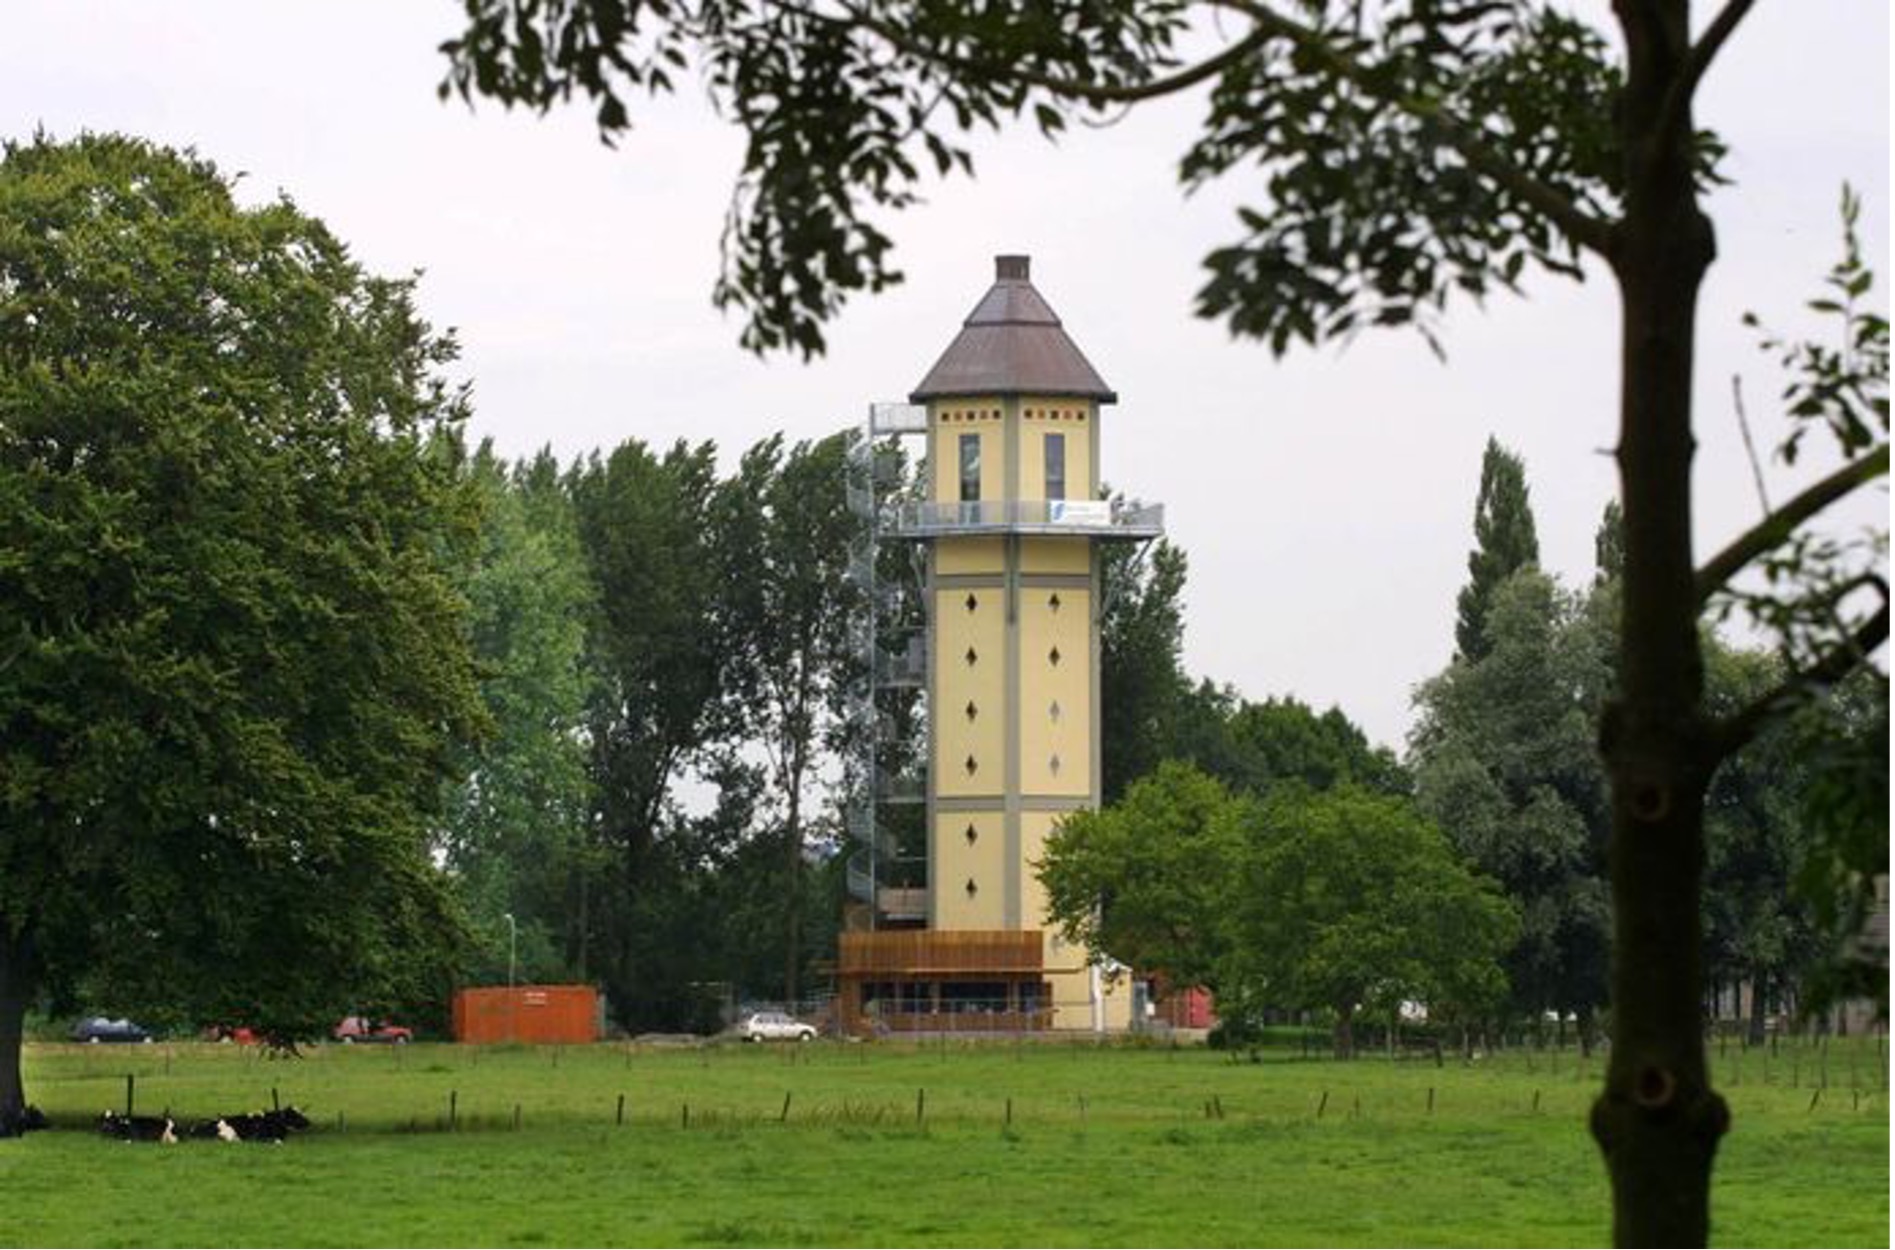 Watertoren Dubbeldam te koop voor 695.000 euro | Dordrecht | AD.nl